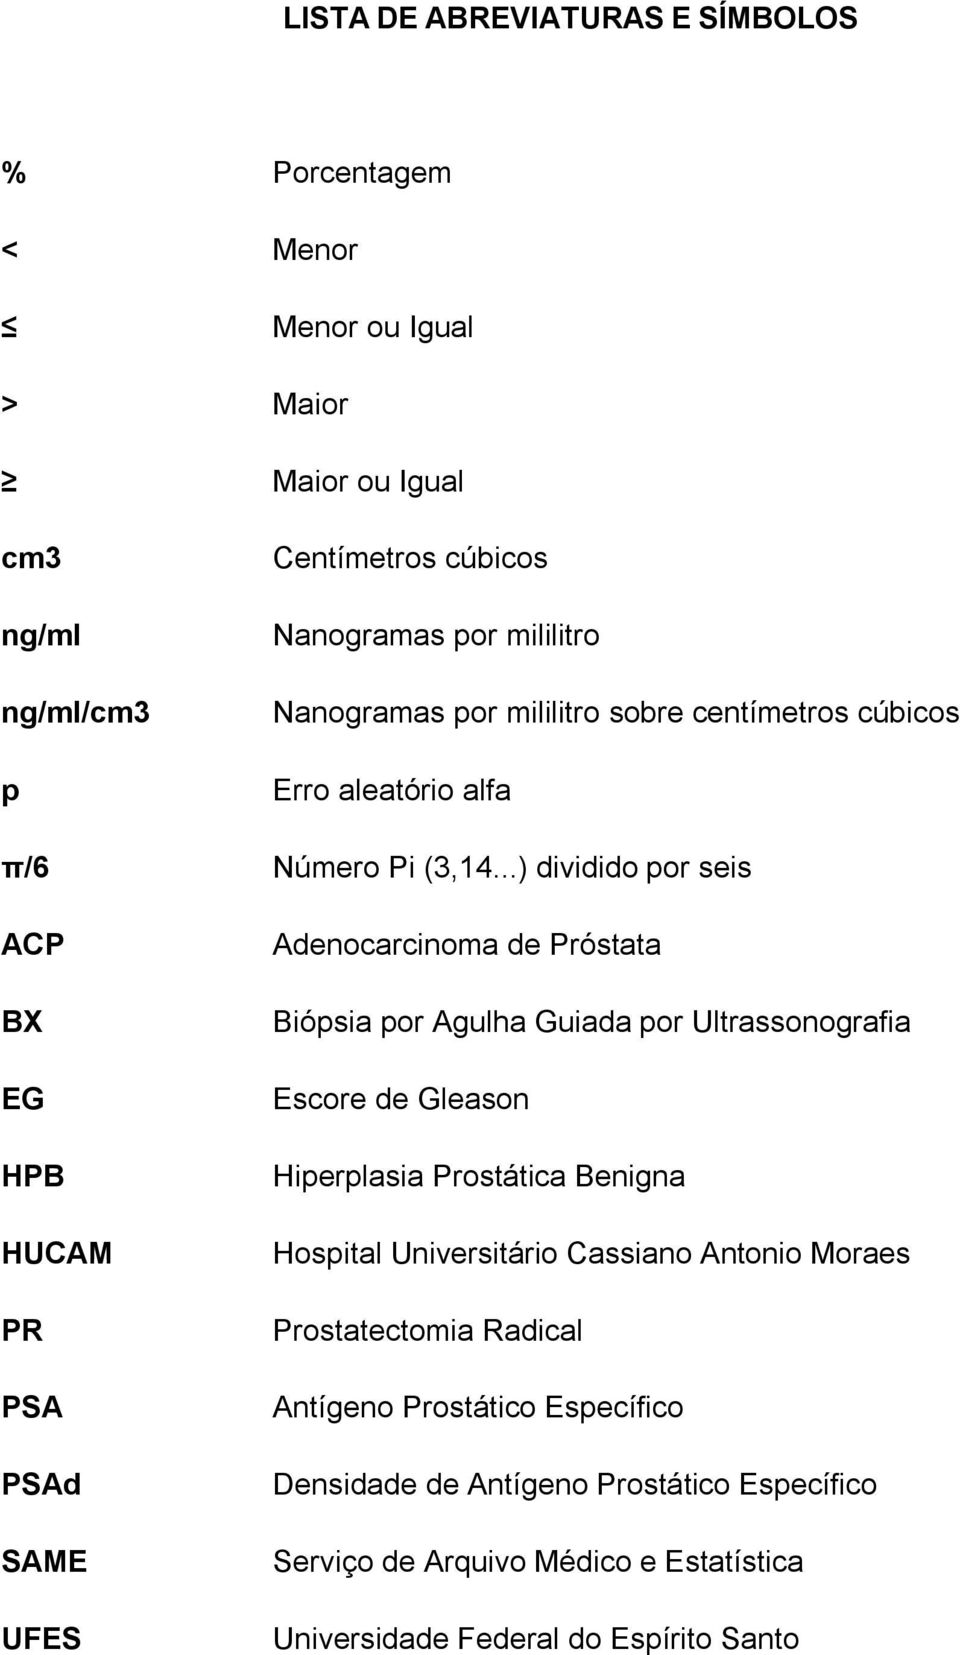 ..) dividido por seis ACP BX EG HPB HUCAM PR PSA PSAd SAME UFES Adenocarcinoma de Próstata Biópsia por Agulha Guiada por Ultrassonografia Escore de Gleason